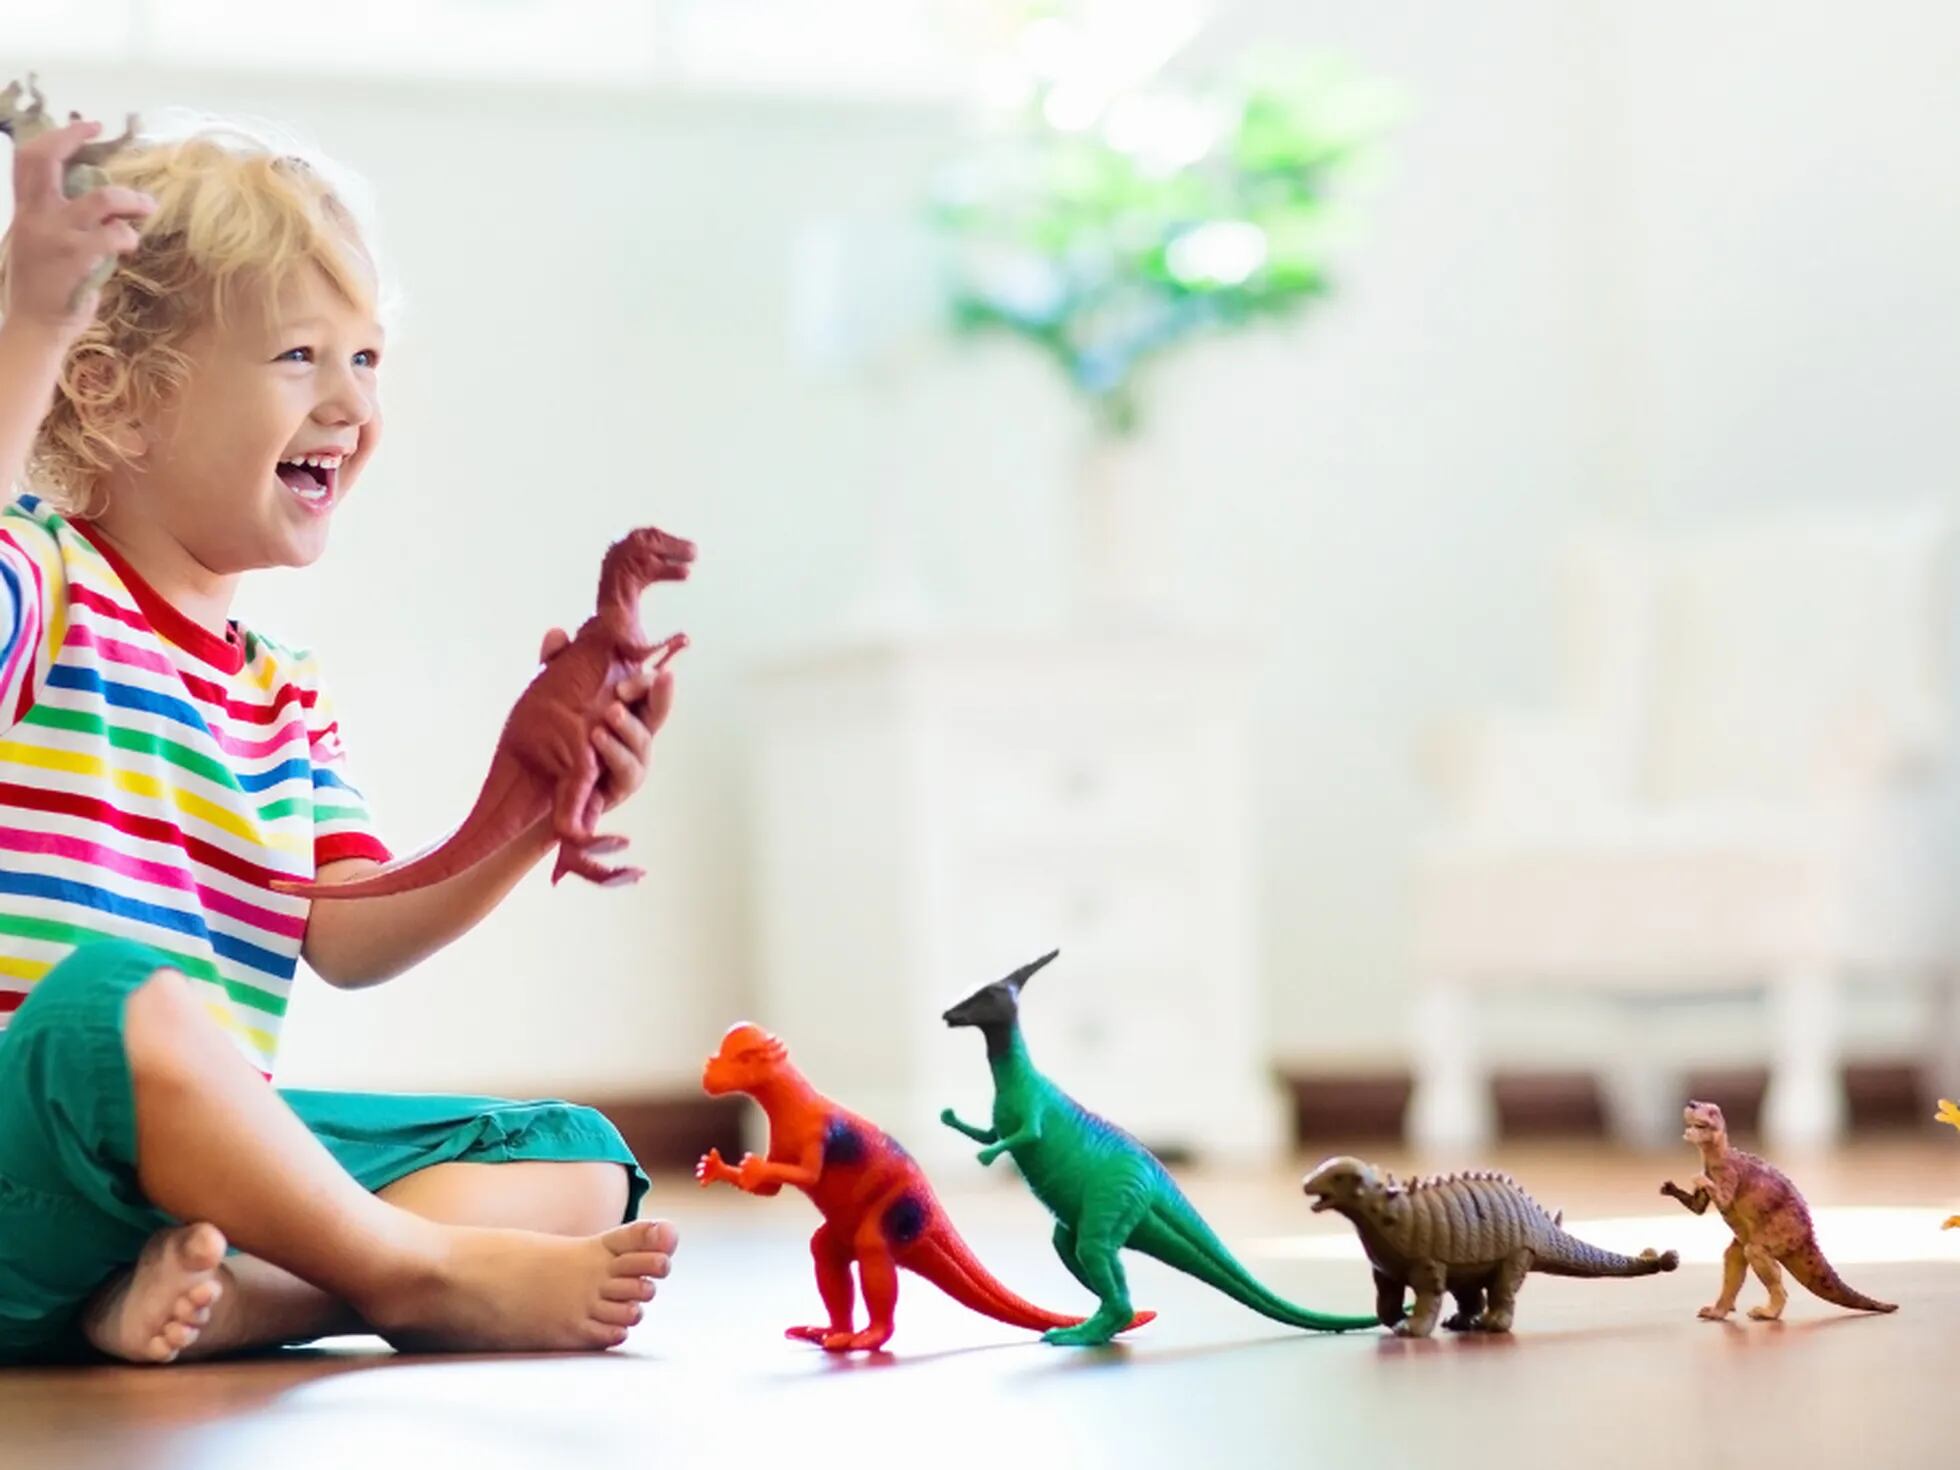 Los mejores dinosaurios de juguete, Escaparate: compras y ofertas